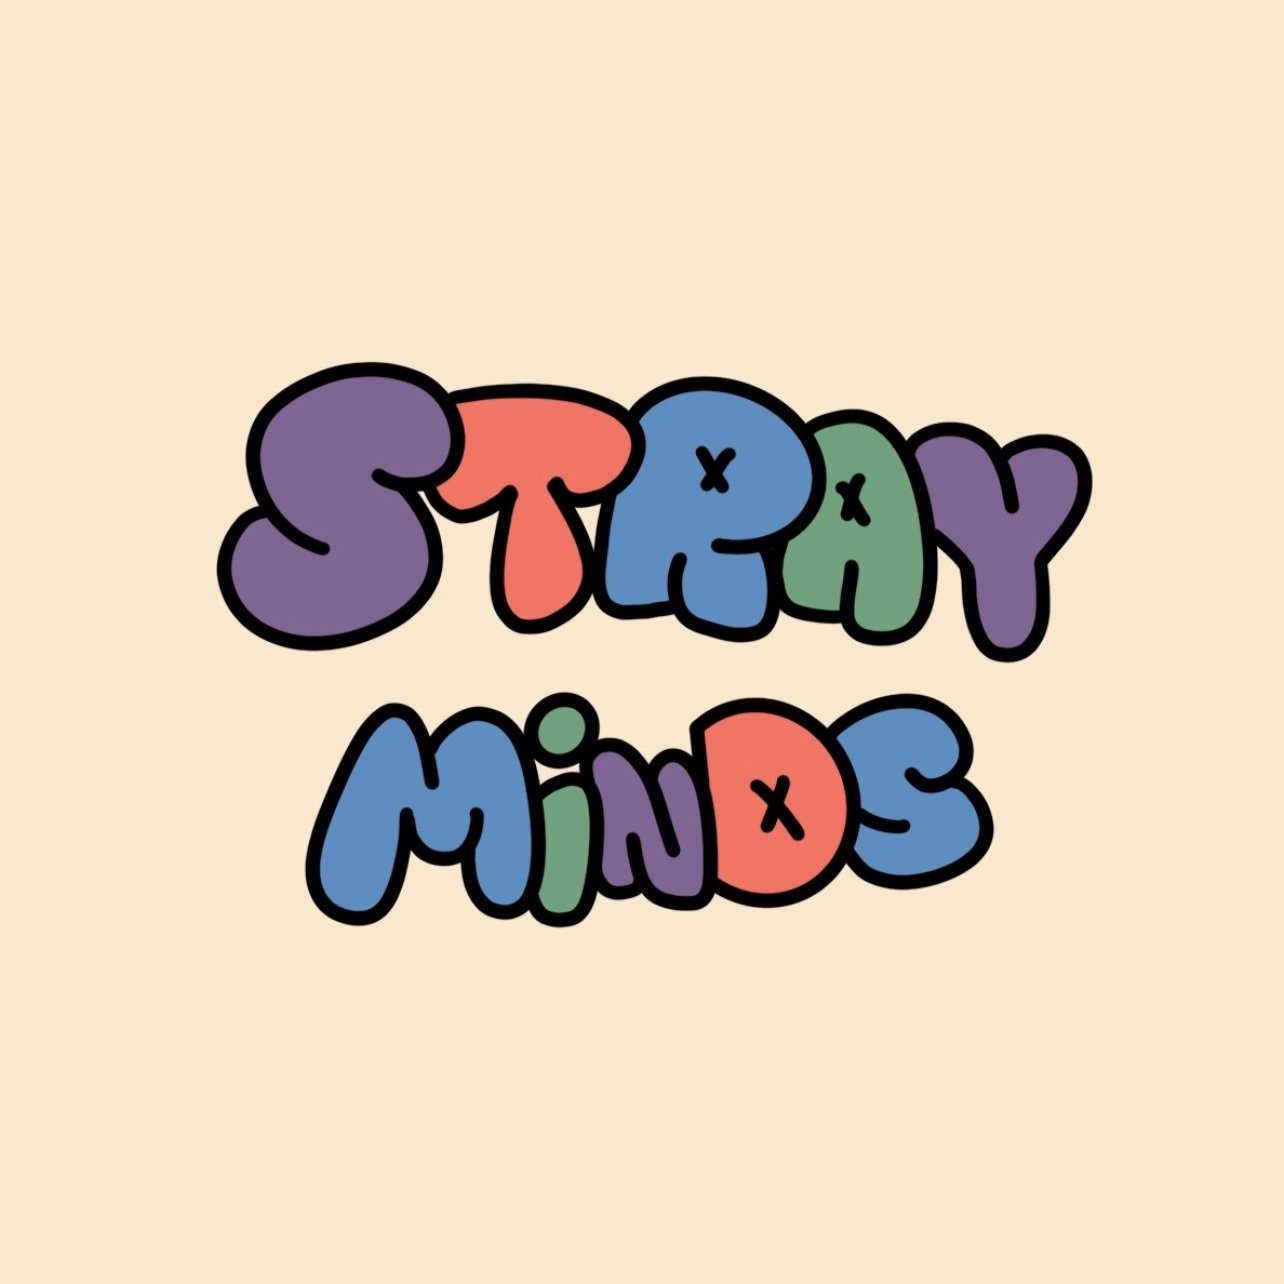 Stray Minds